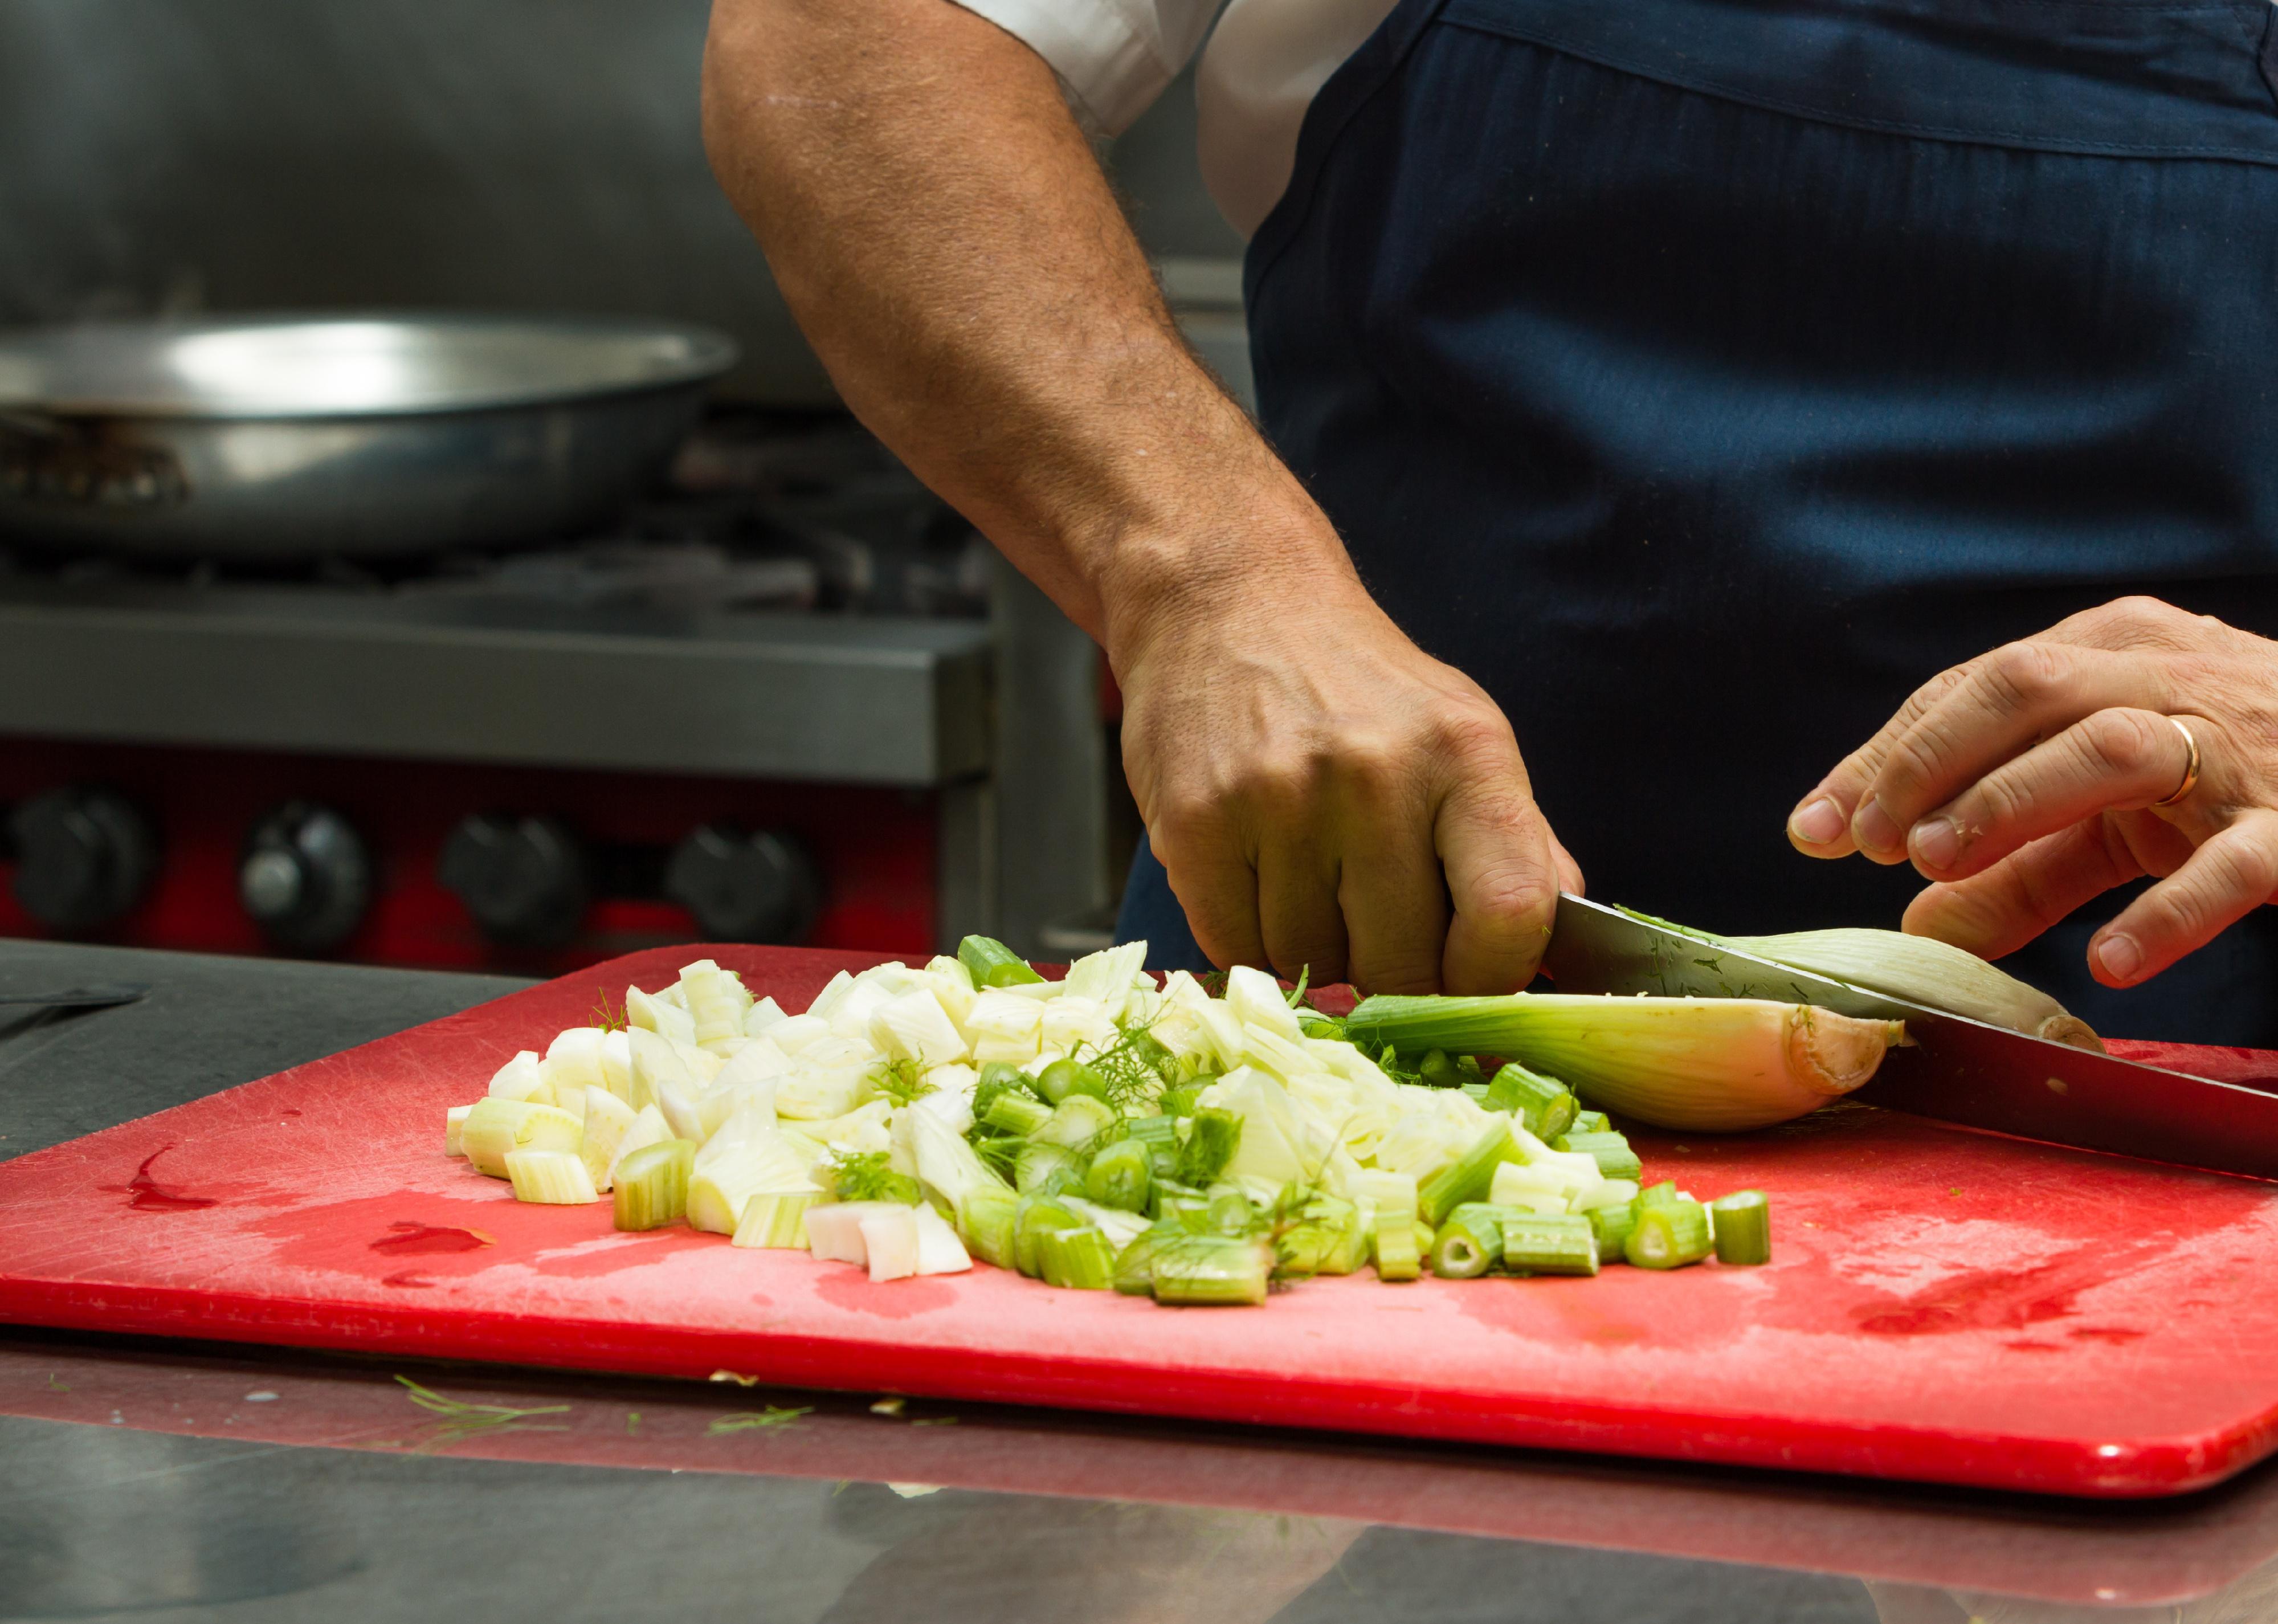 Food prep worker chops a vegetable